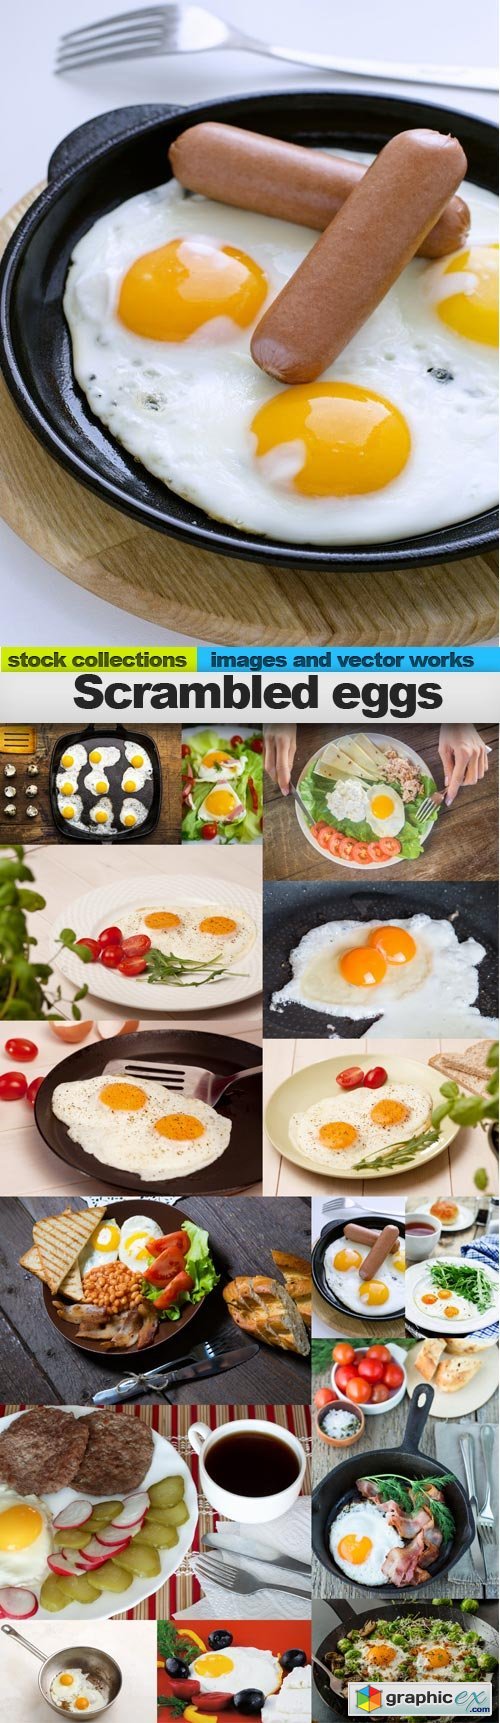 Scrambled eggs, 15 x UHQ JPEG